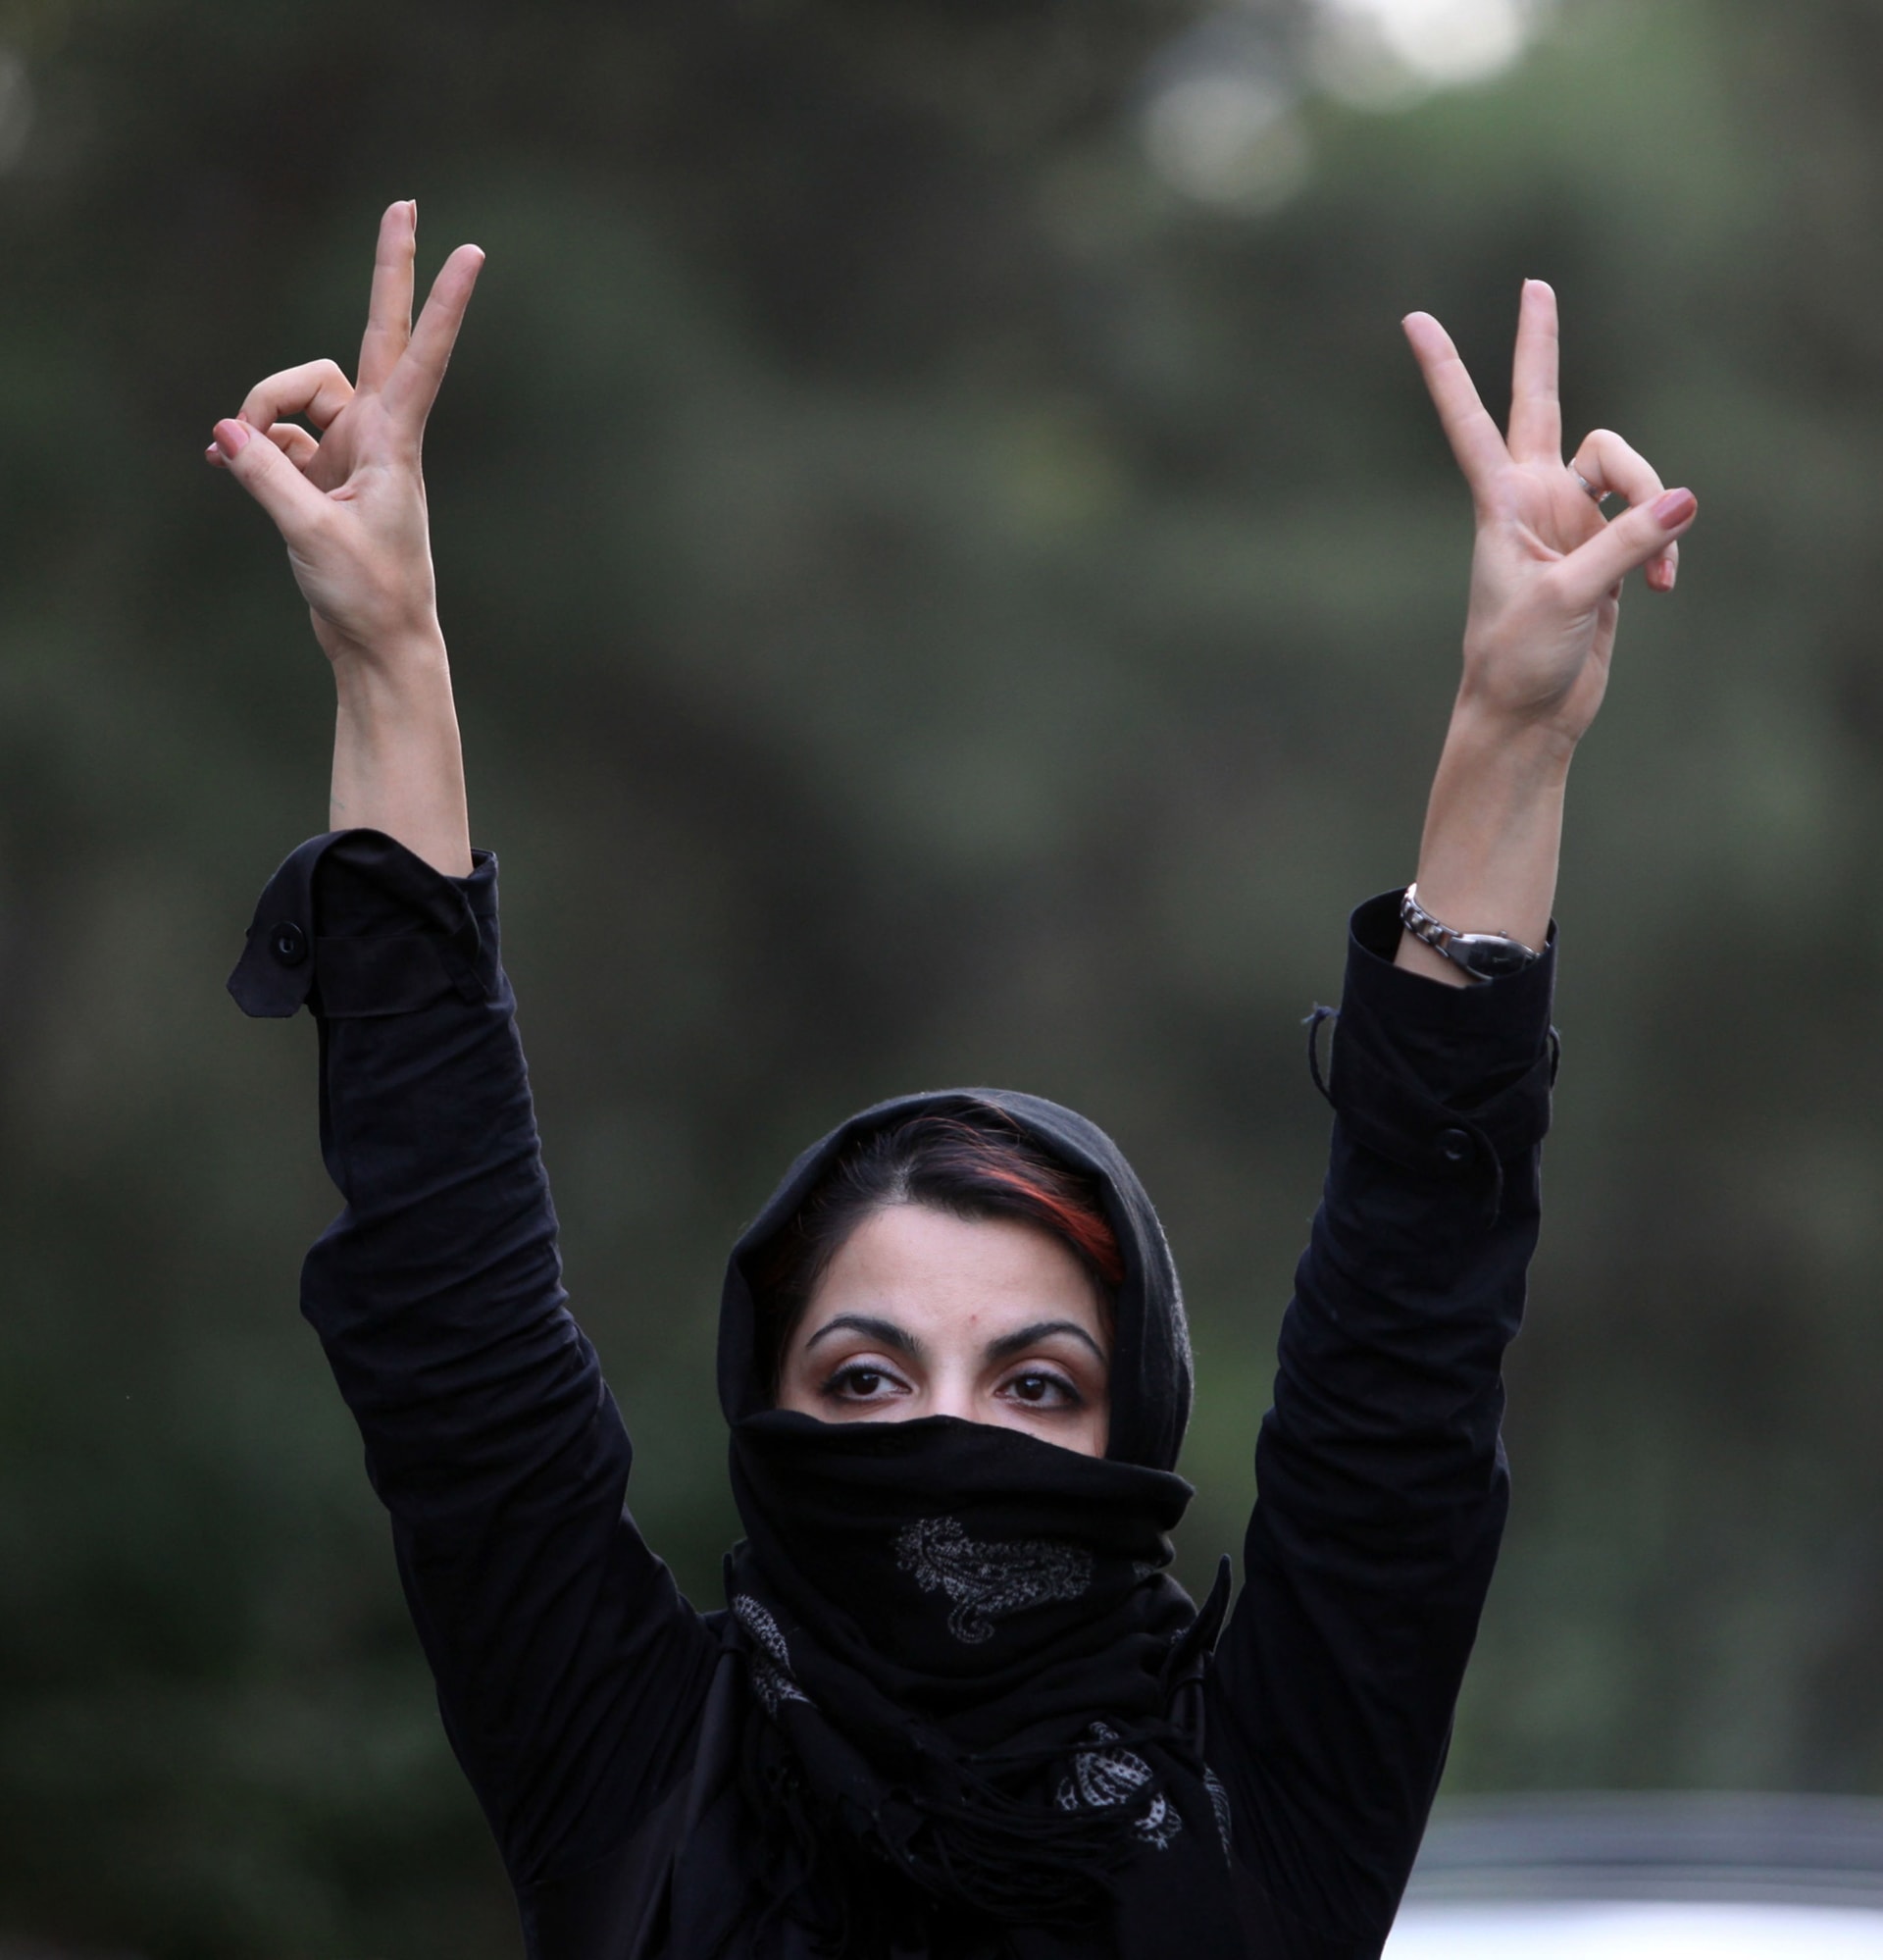 خبراء: دخول المزيد من النساء البرلمان الإيراني دلالة على تغيير اجتماعي.. "رقم قياسي" لمشاركة النساء منذ ثورة 1979